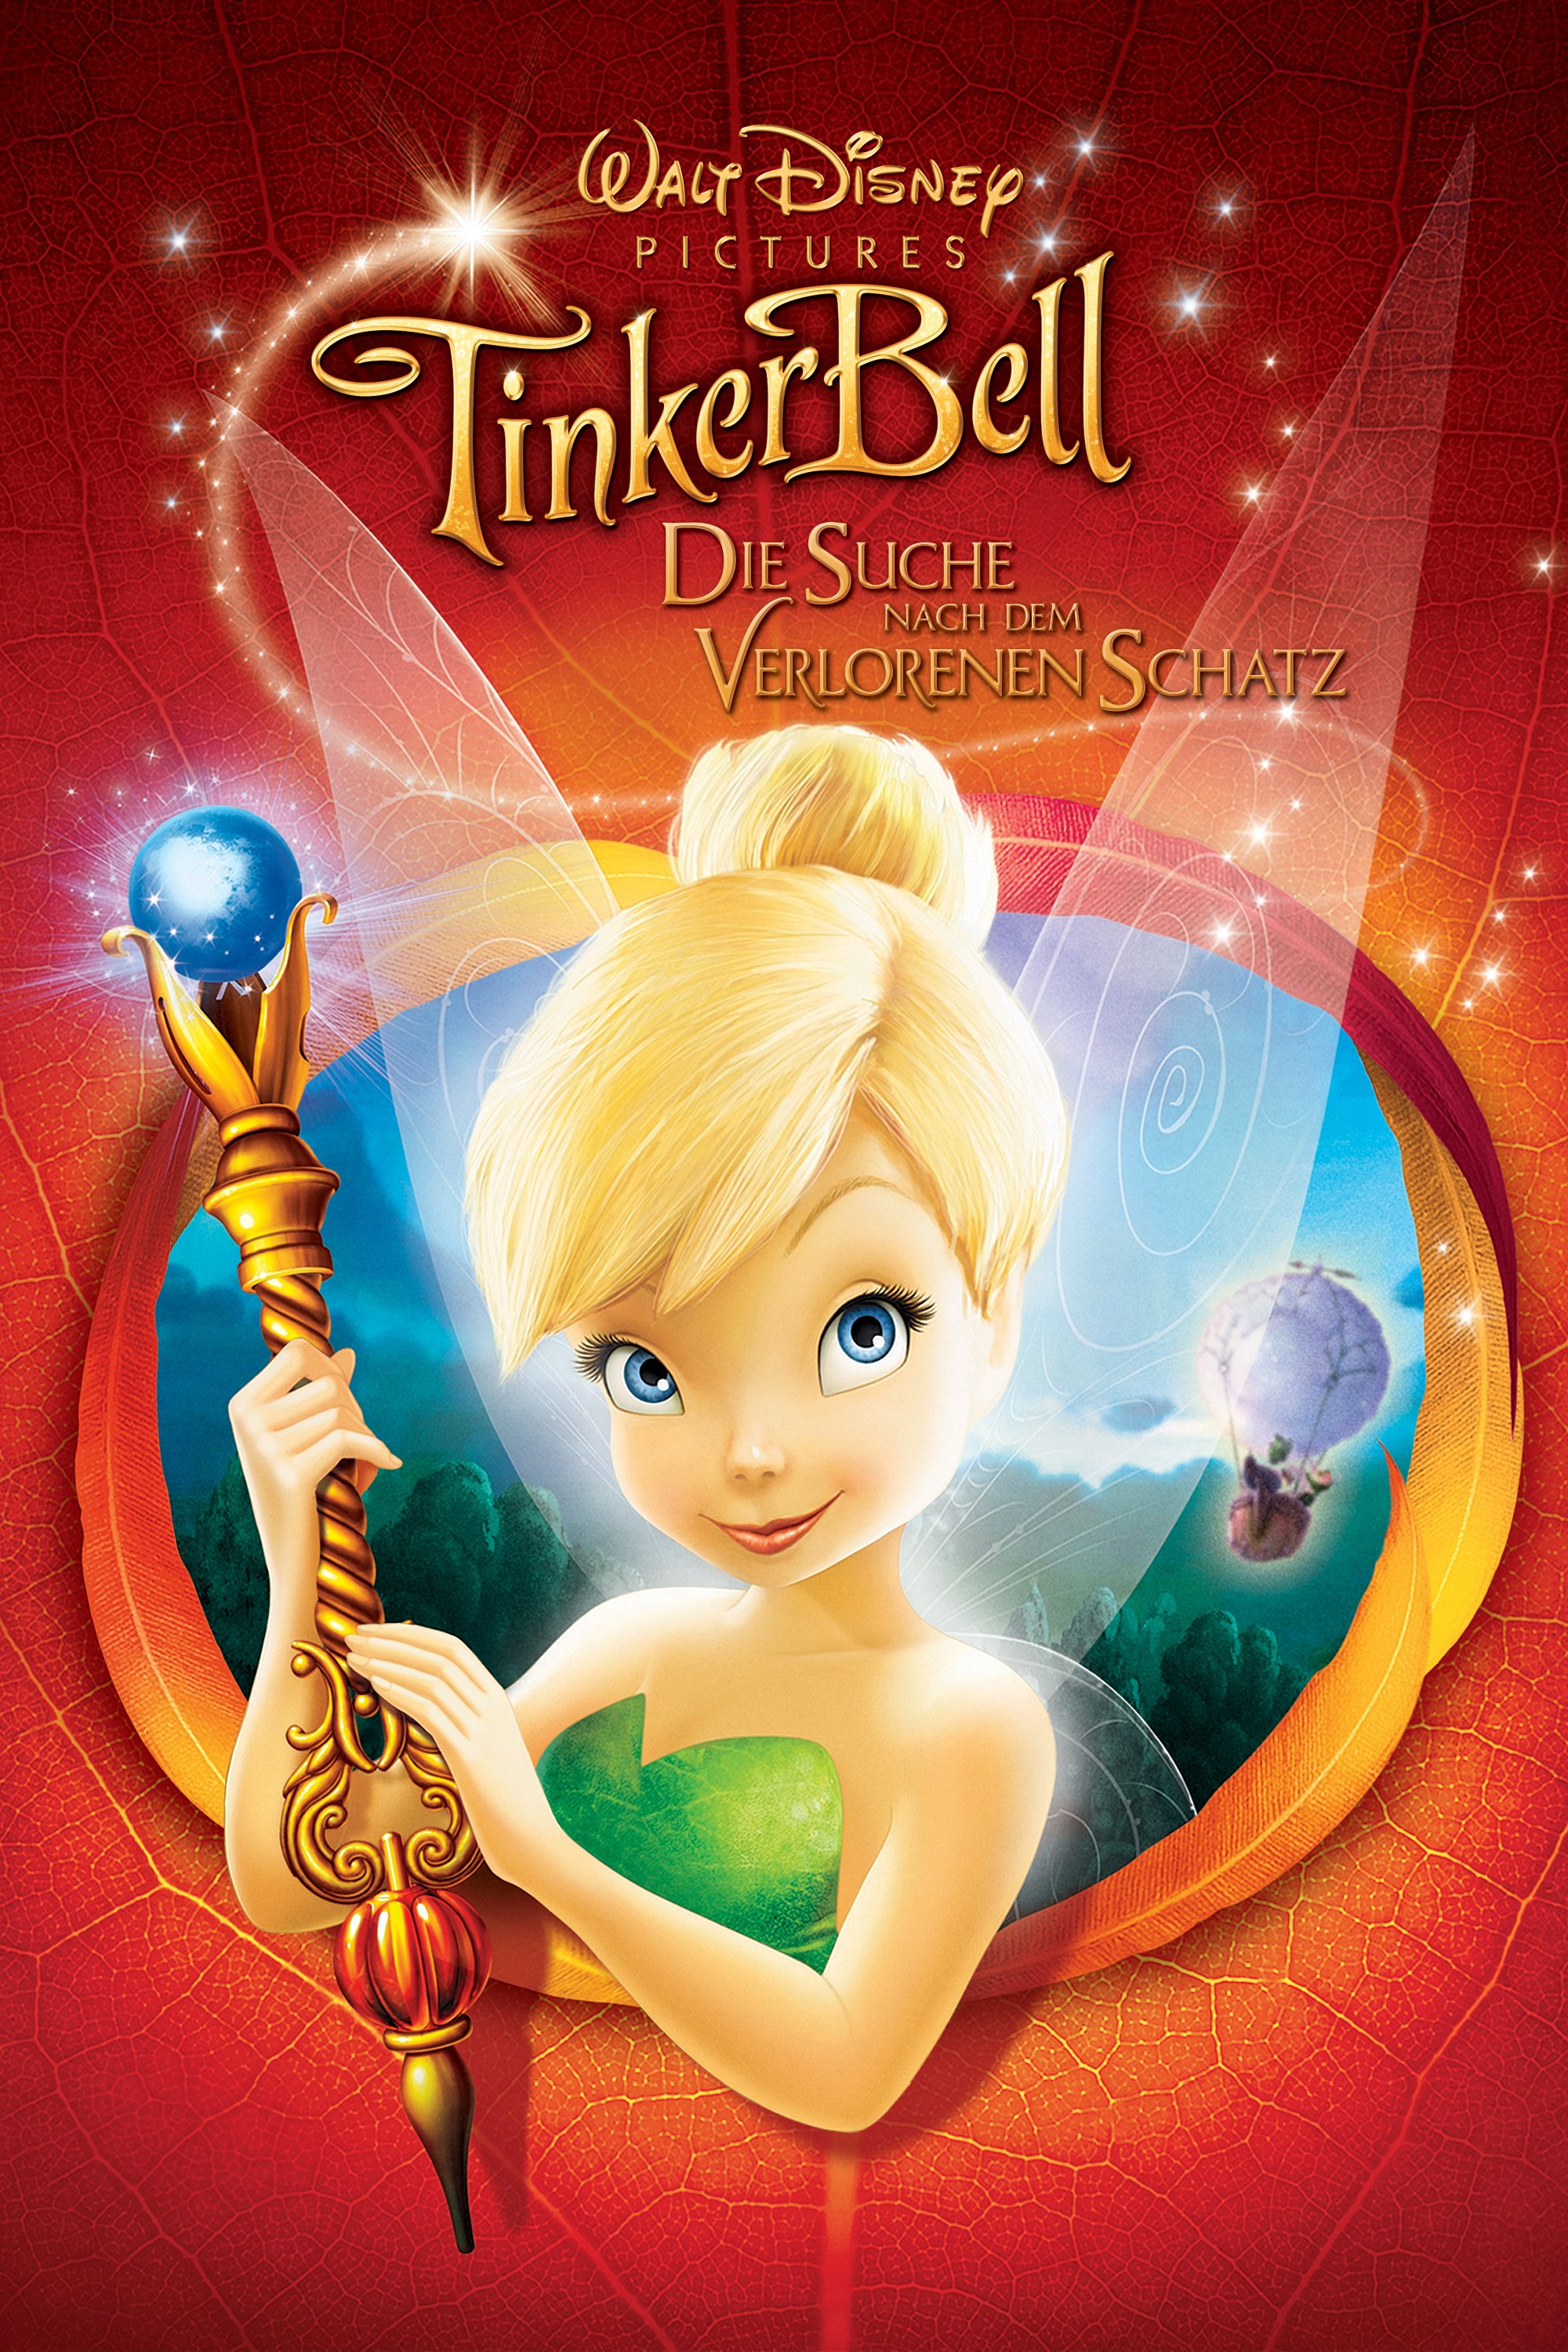 Plakat von "TinkerBell - Die Suche nach dem verlorenen Schatz"